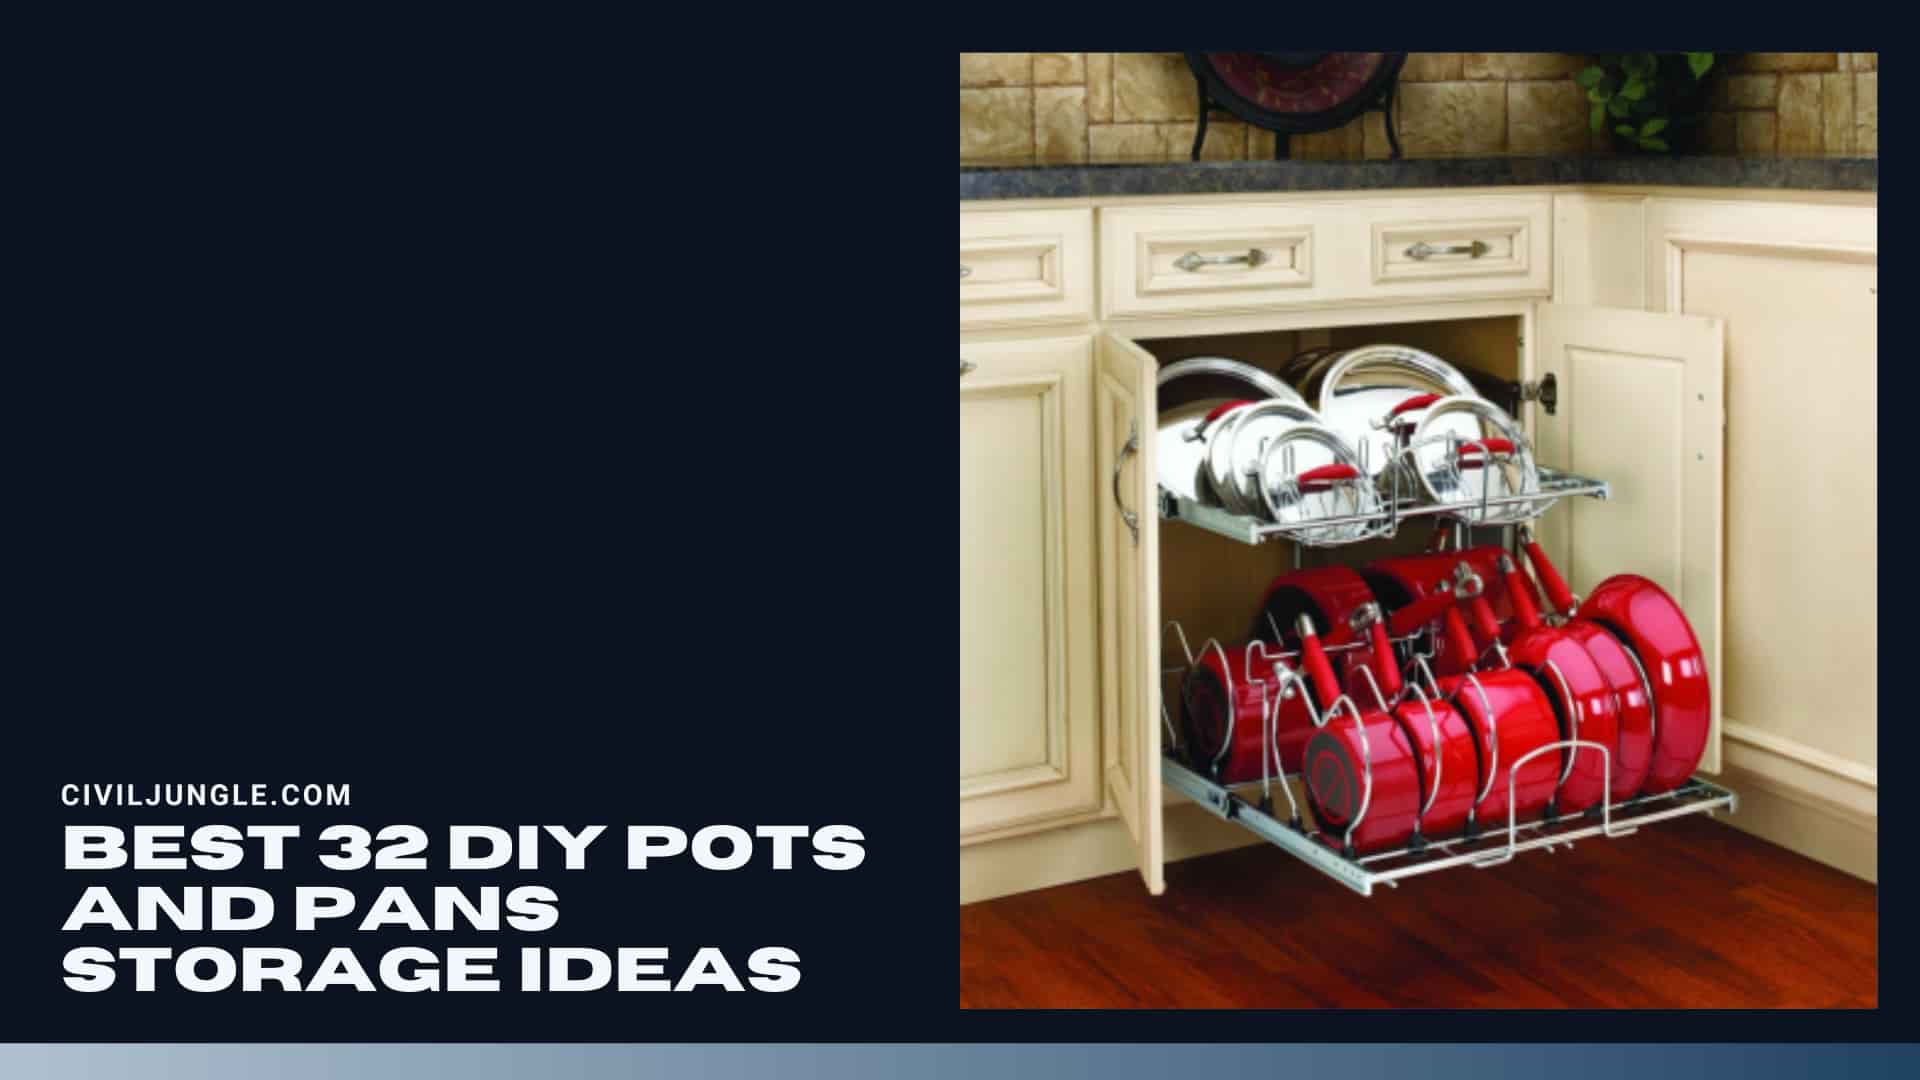 Best 32 Diy Pots and Pans Storage Ideas